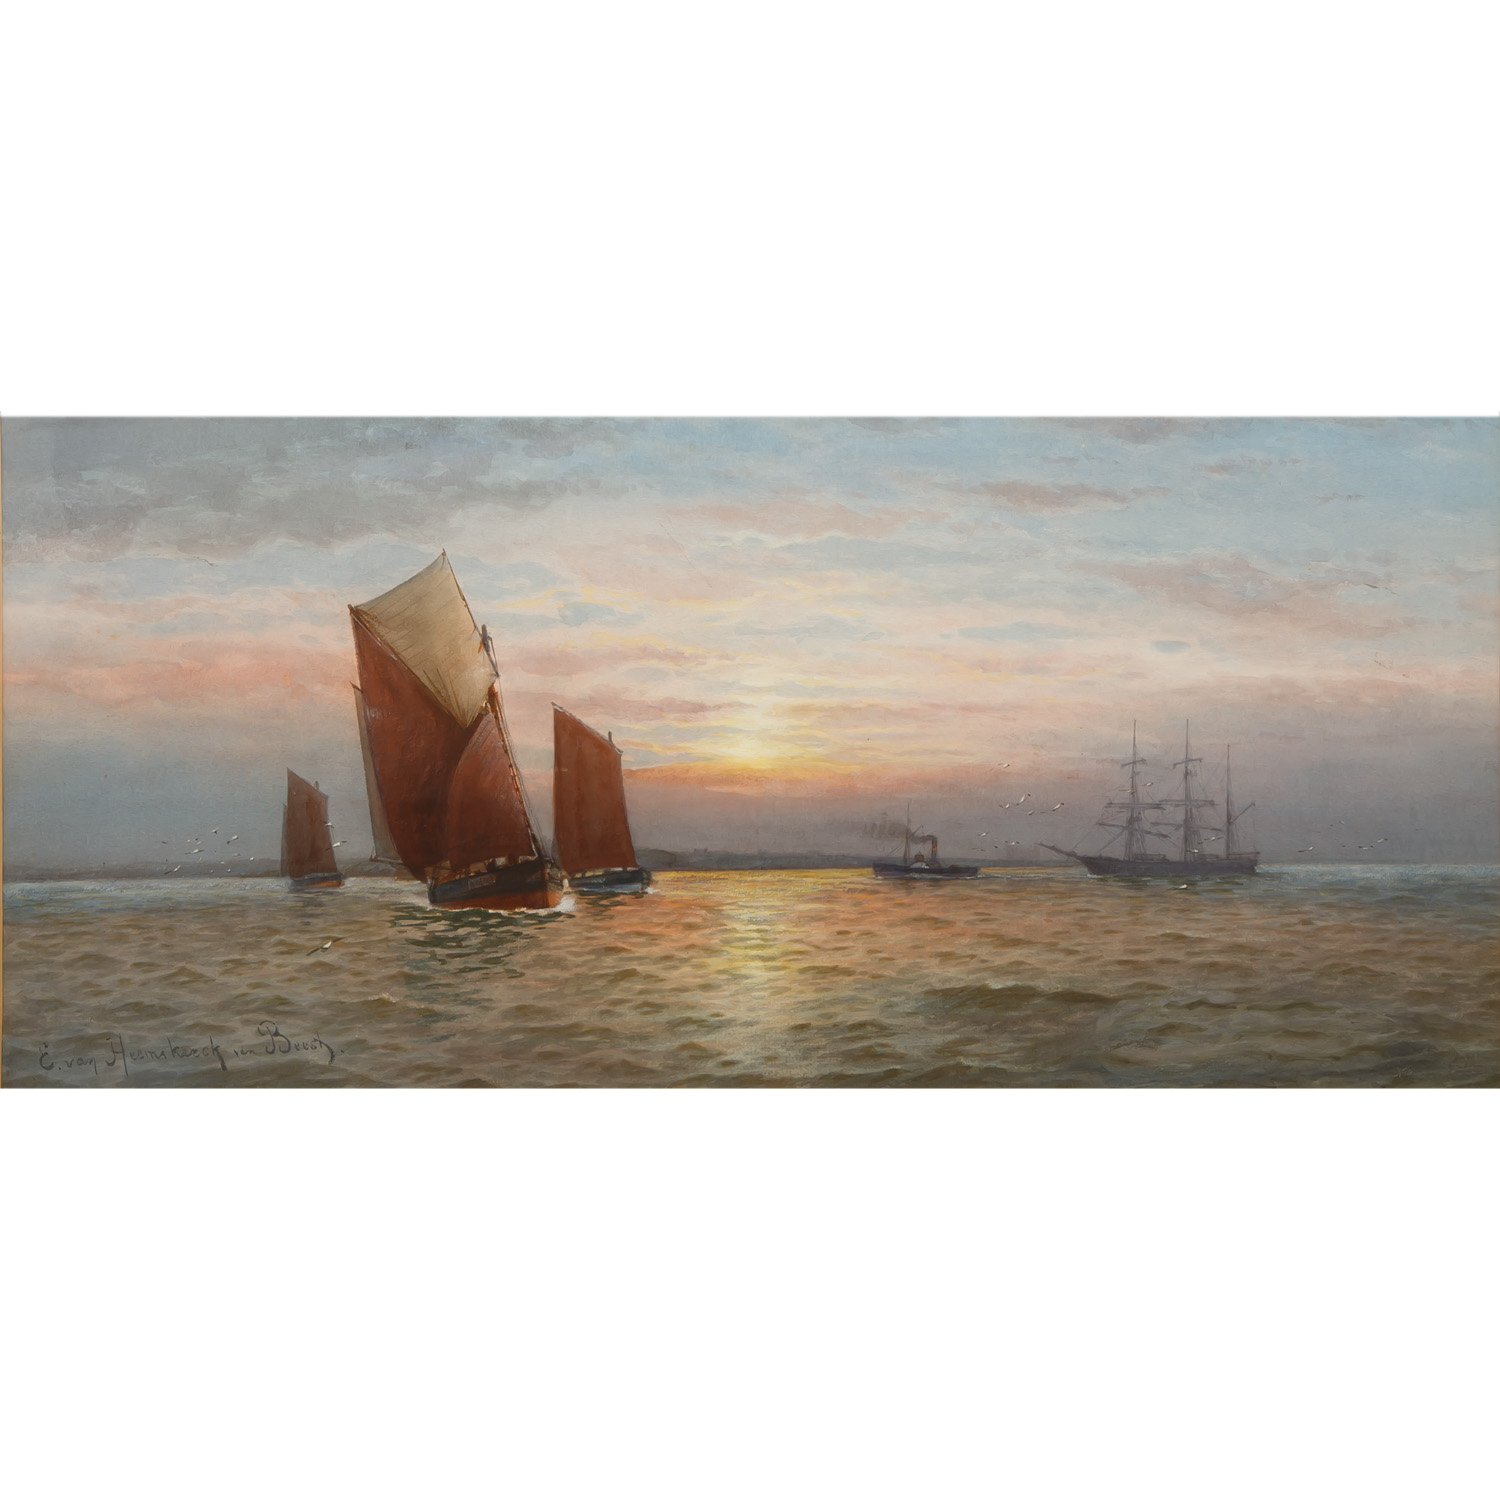 VAN HEEMSKERCK VAN BEEST, JACOB EDUARD (1828-1894), “Segelschiffe in Abendstimmung“,